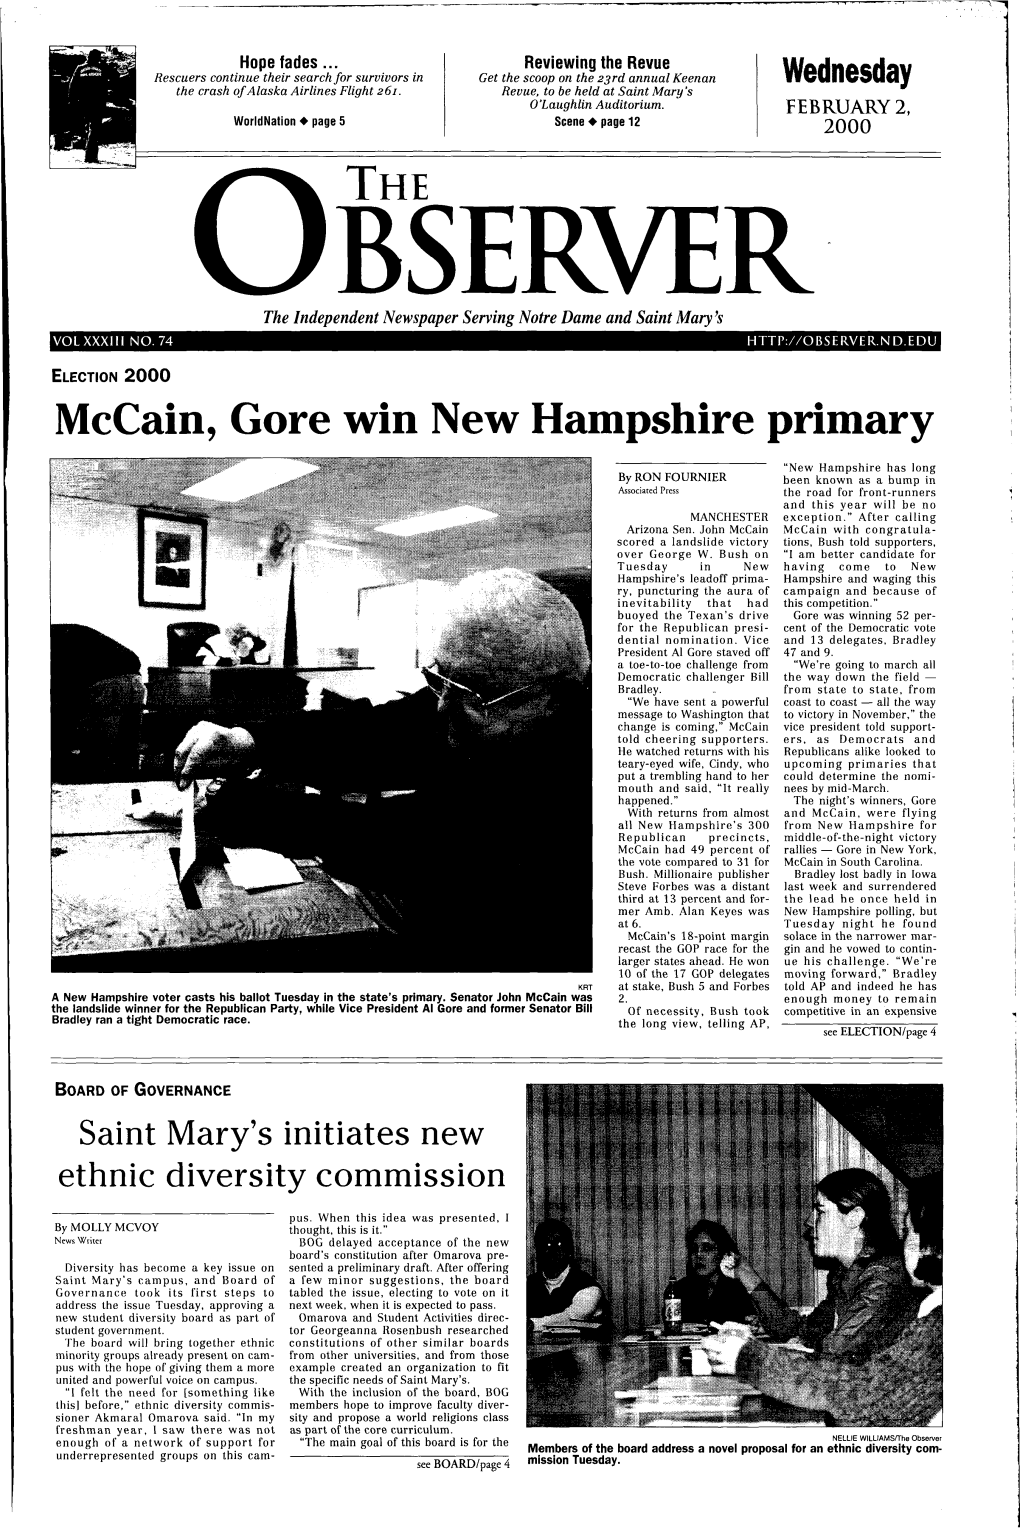 Mccain, Gore Win New Hampshire Primary